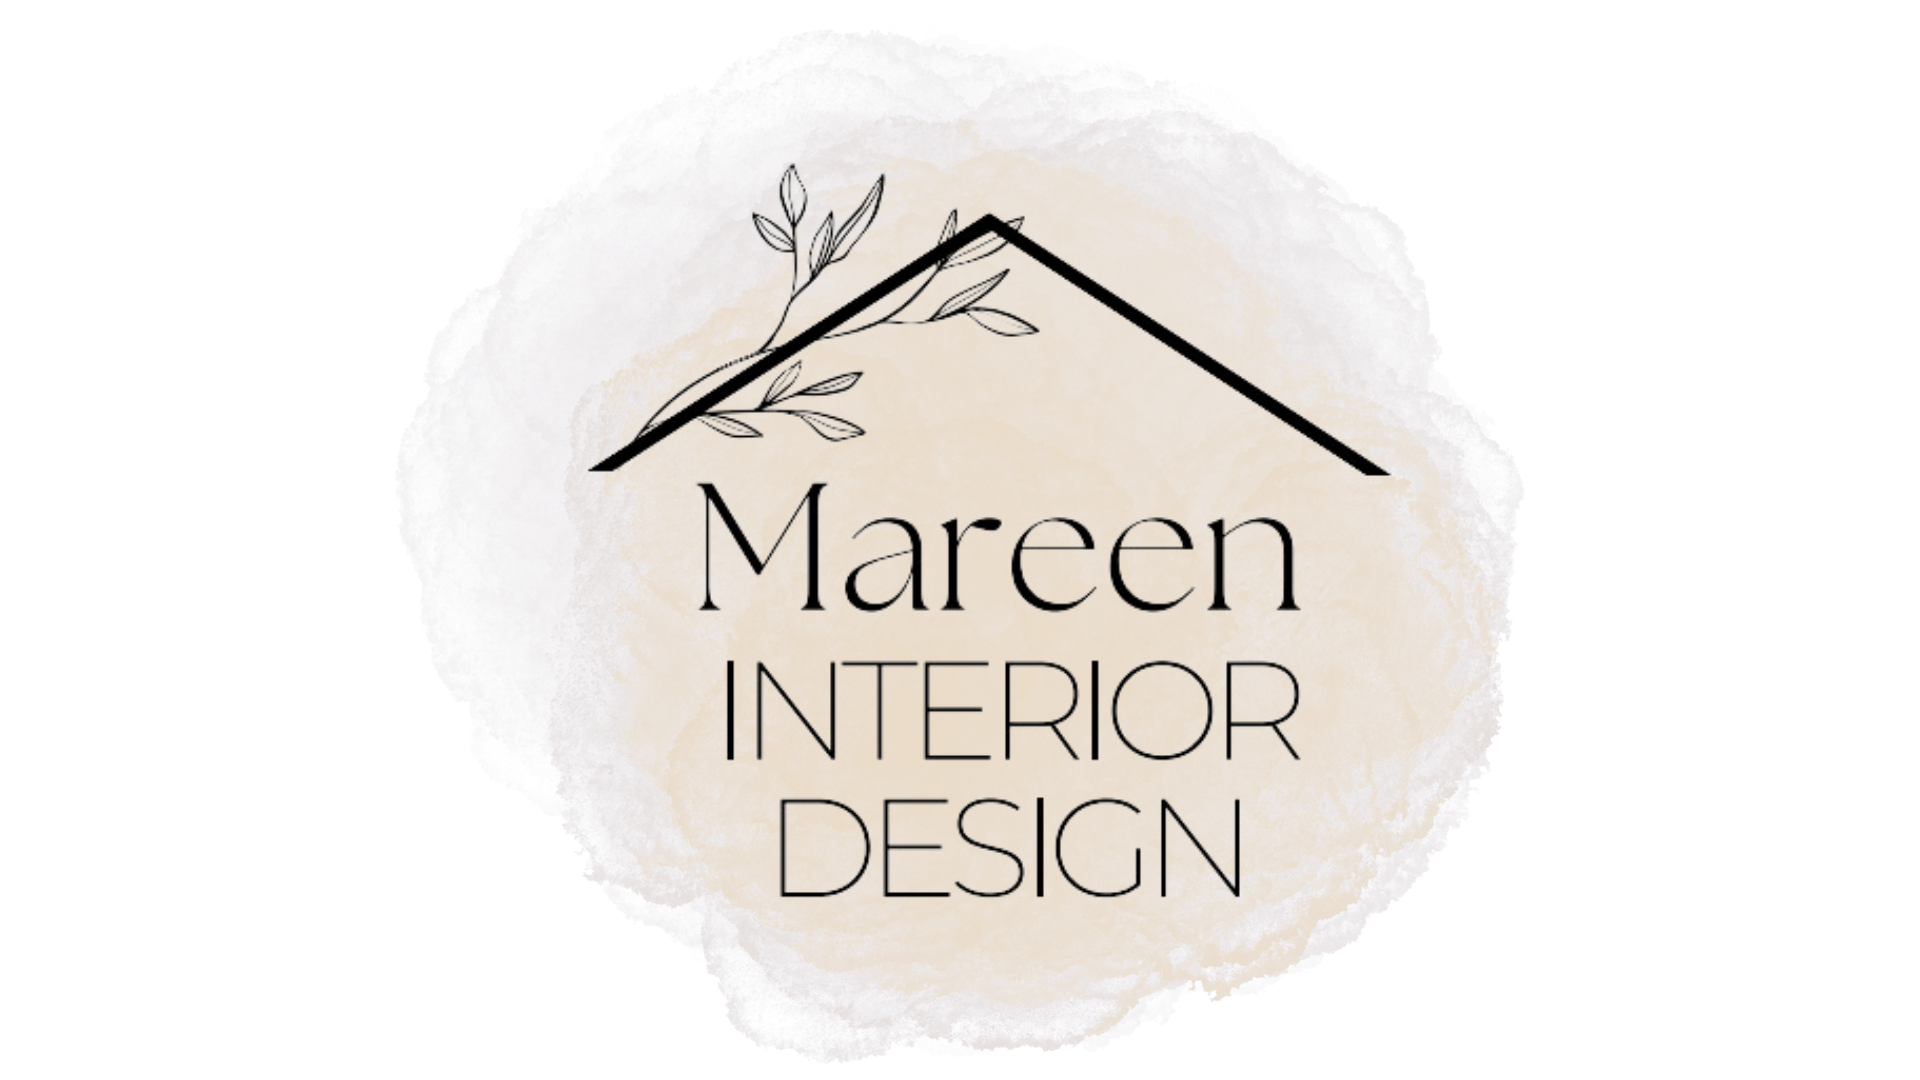 Mareen Interior Design - TPPL